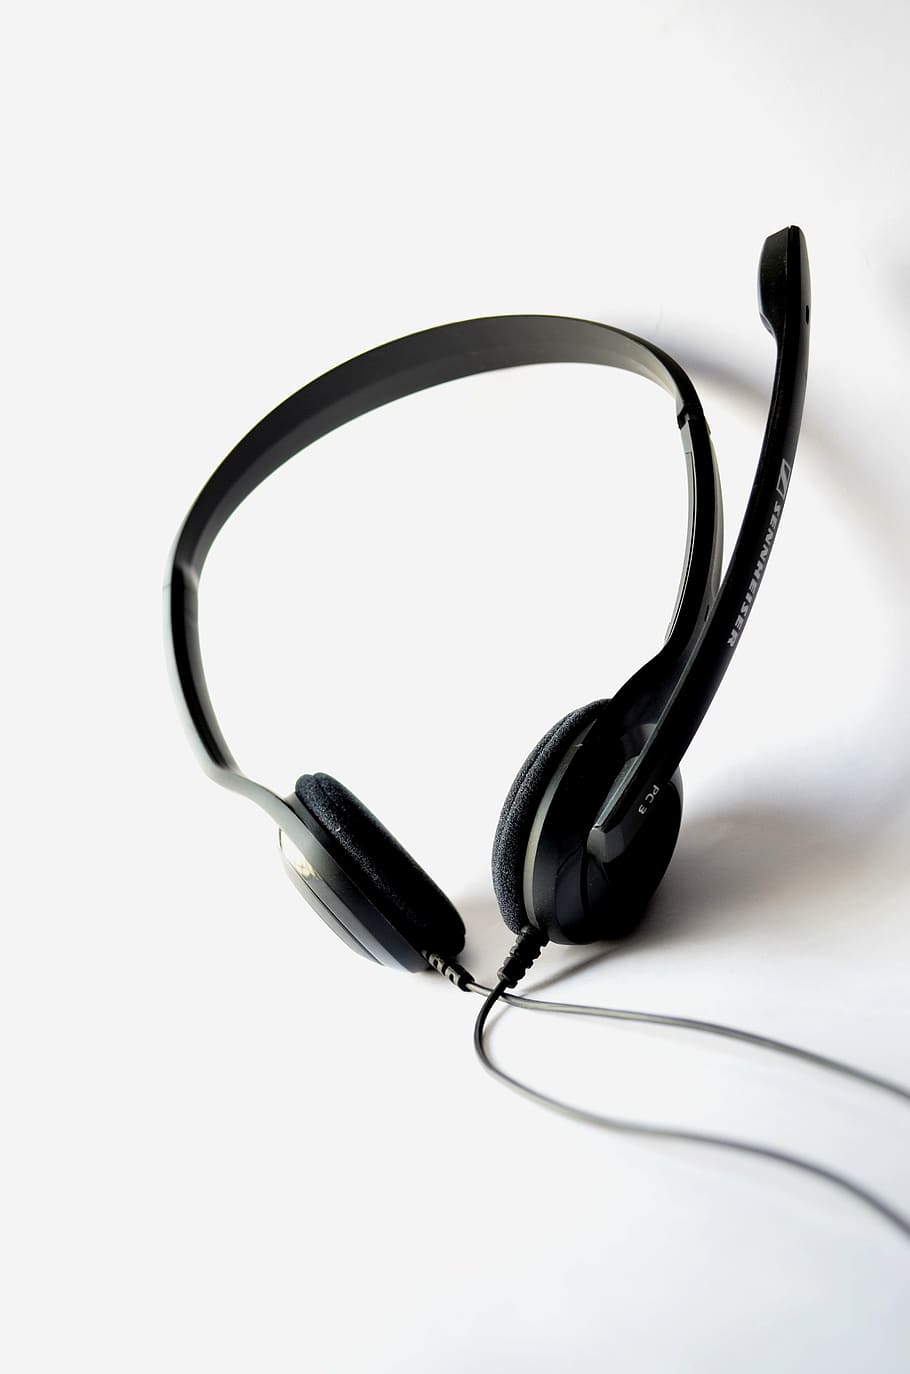 fones de ouvido com fio preto, fones de ouvido, microfone, fone de ouvido, áudio, tecnologia, comunicação, transmissão, voz, gravação